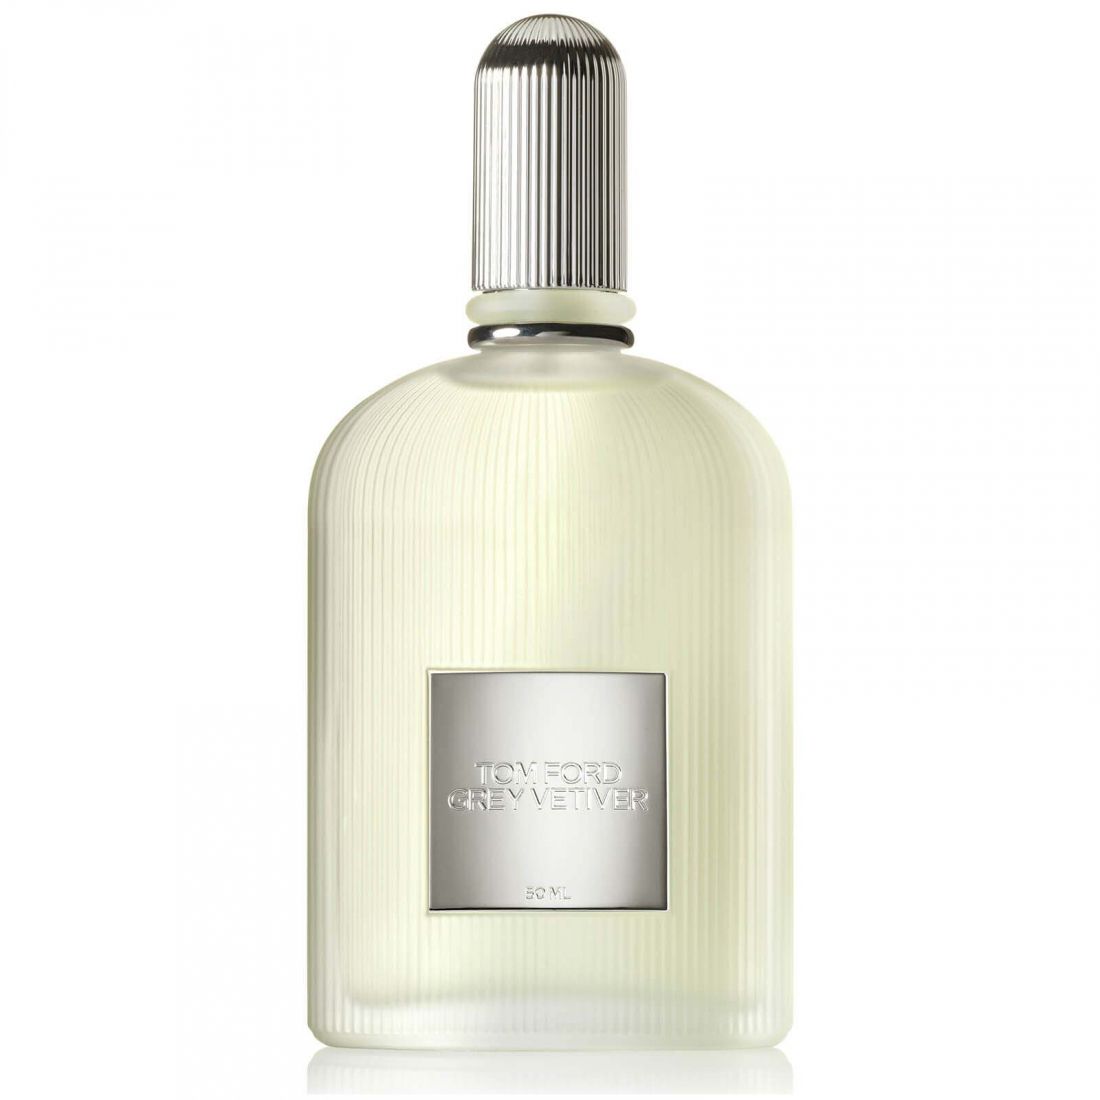 Tom Ford - Eau de parfum 'Grey Vetiver' - 50 ml